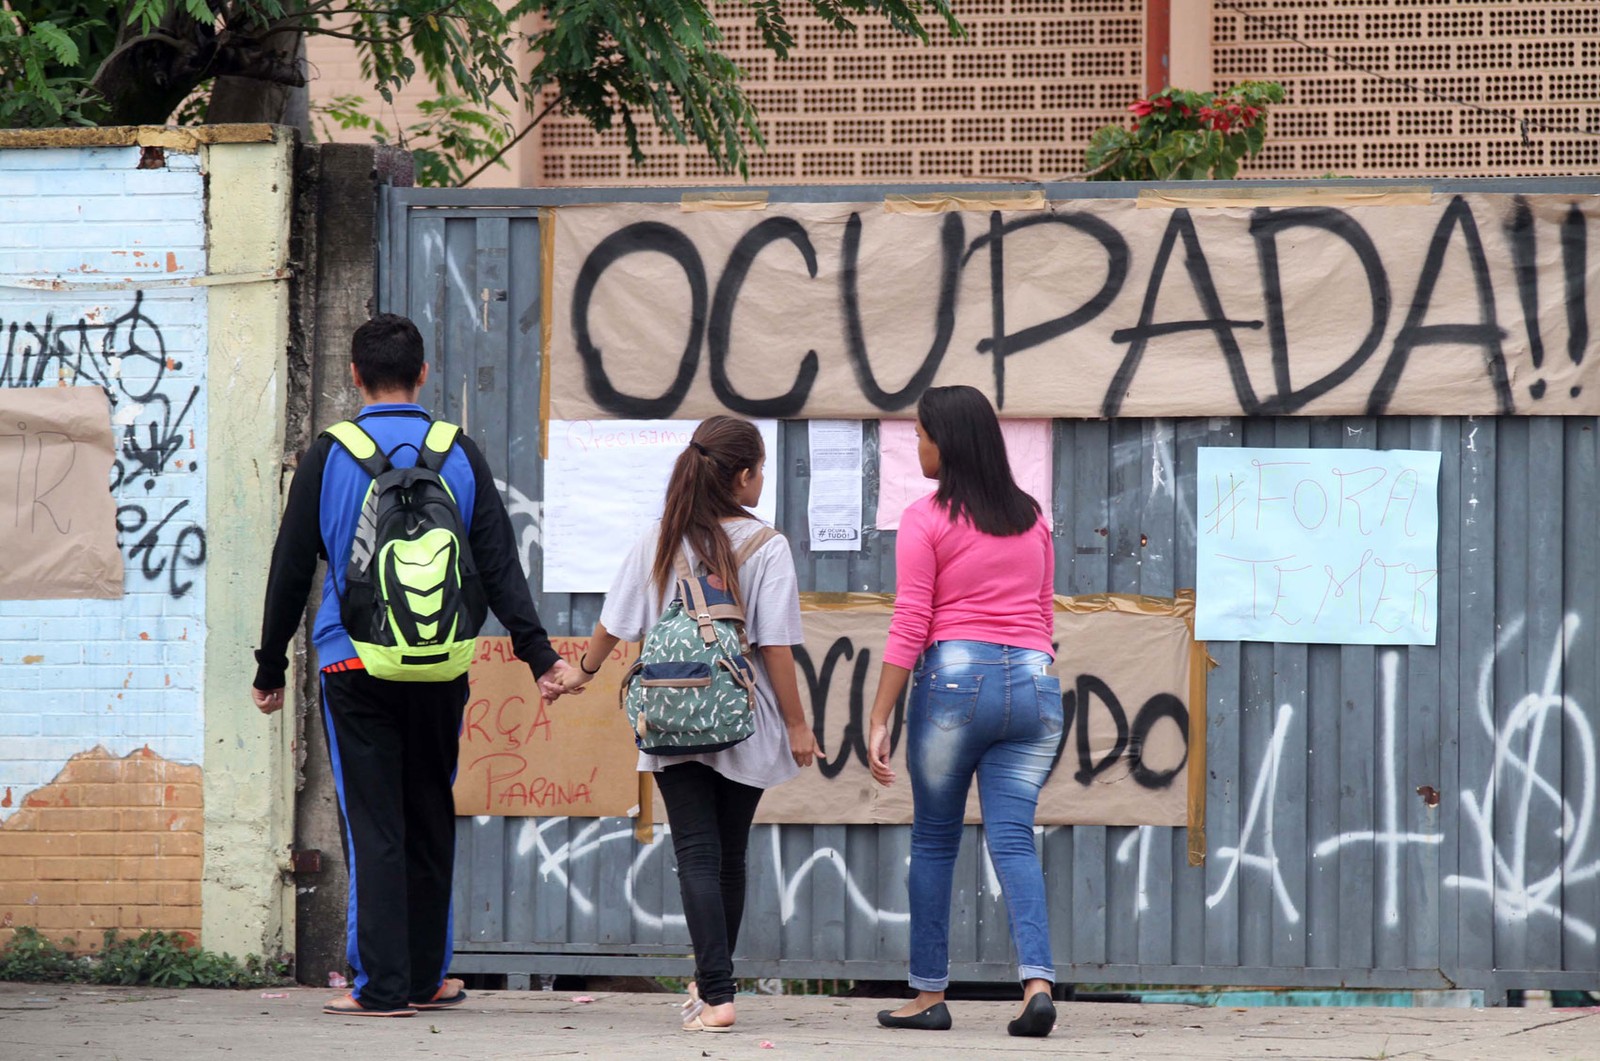 Terceiro dia de ocupação do prédio da Escola Estadual Ruy Rodriguez, no bairro Itajaí, em Campinas (SP) (Foto: Denny Cesare/ Estadão Conteúdo)